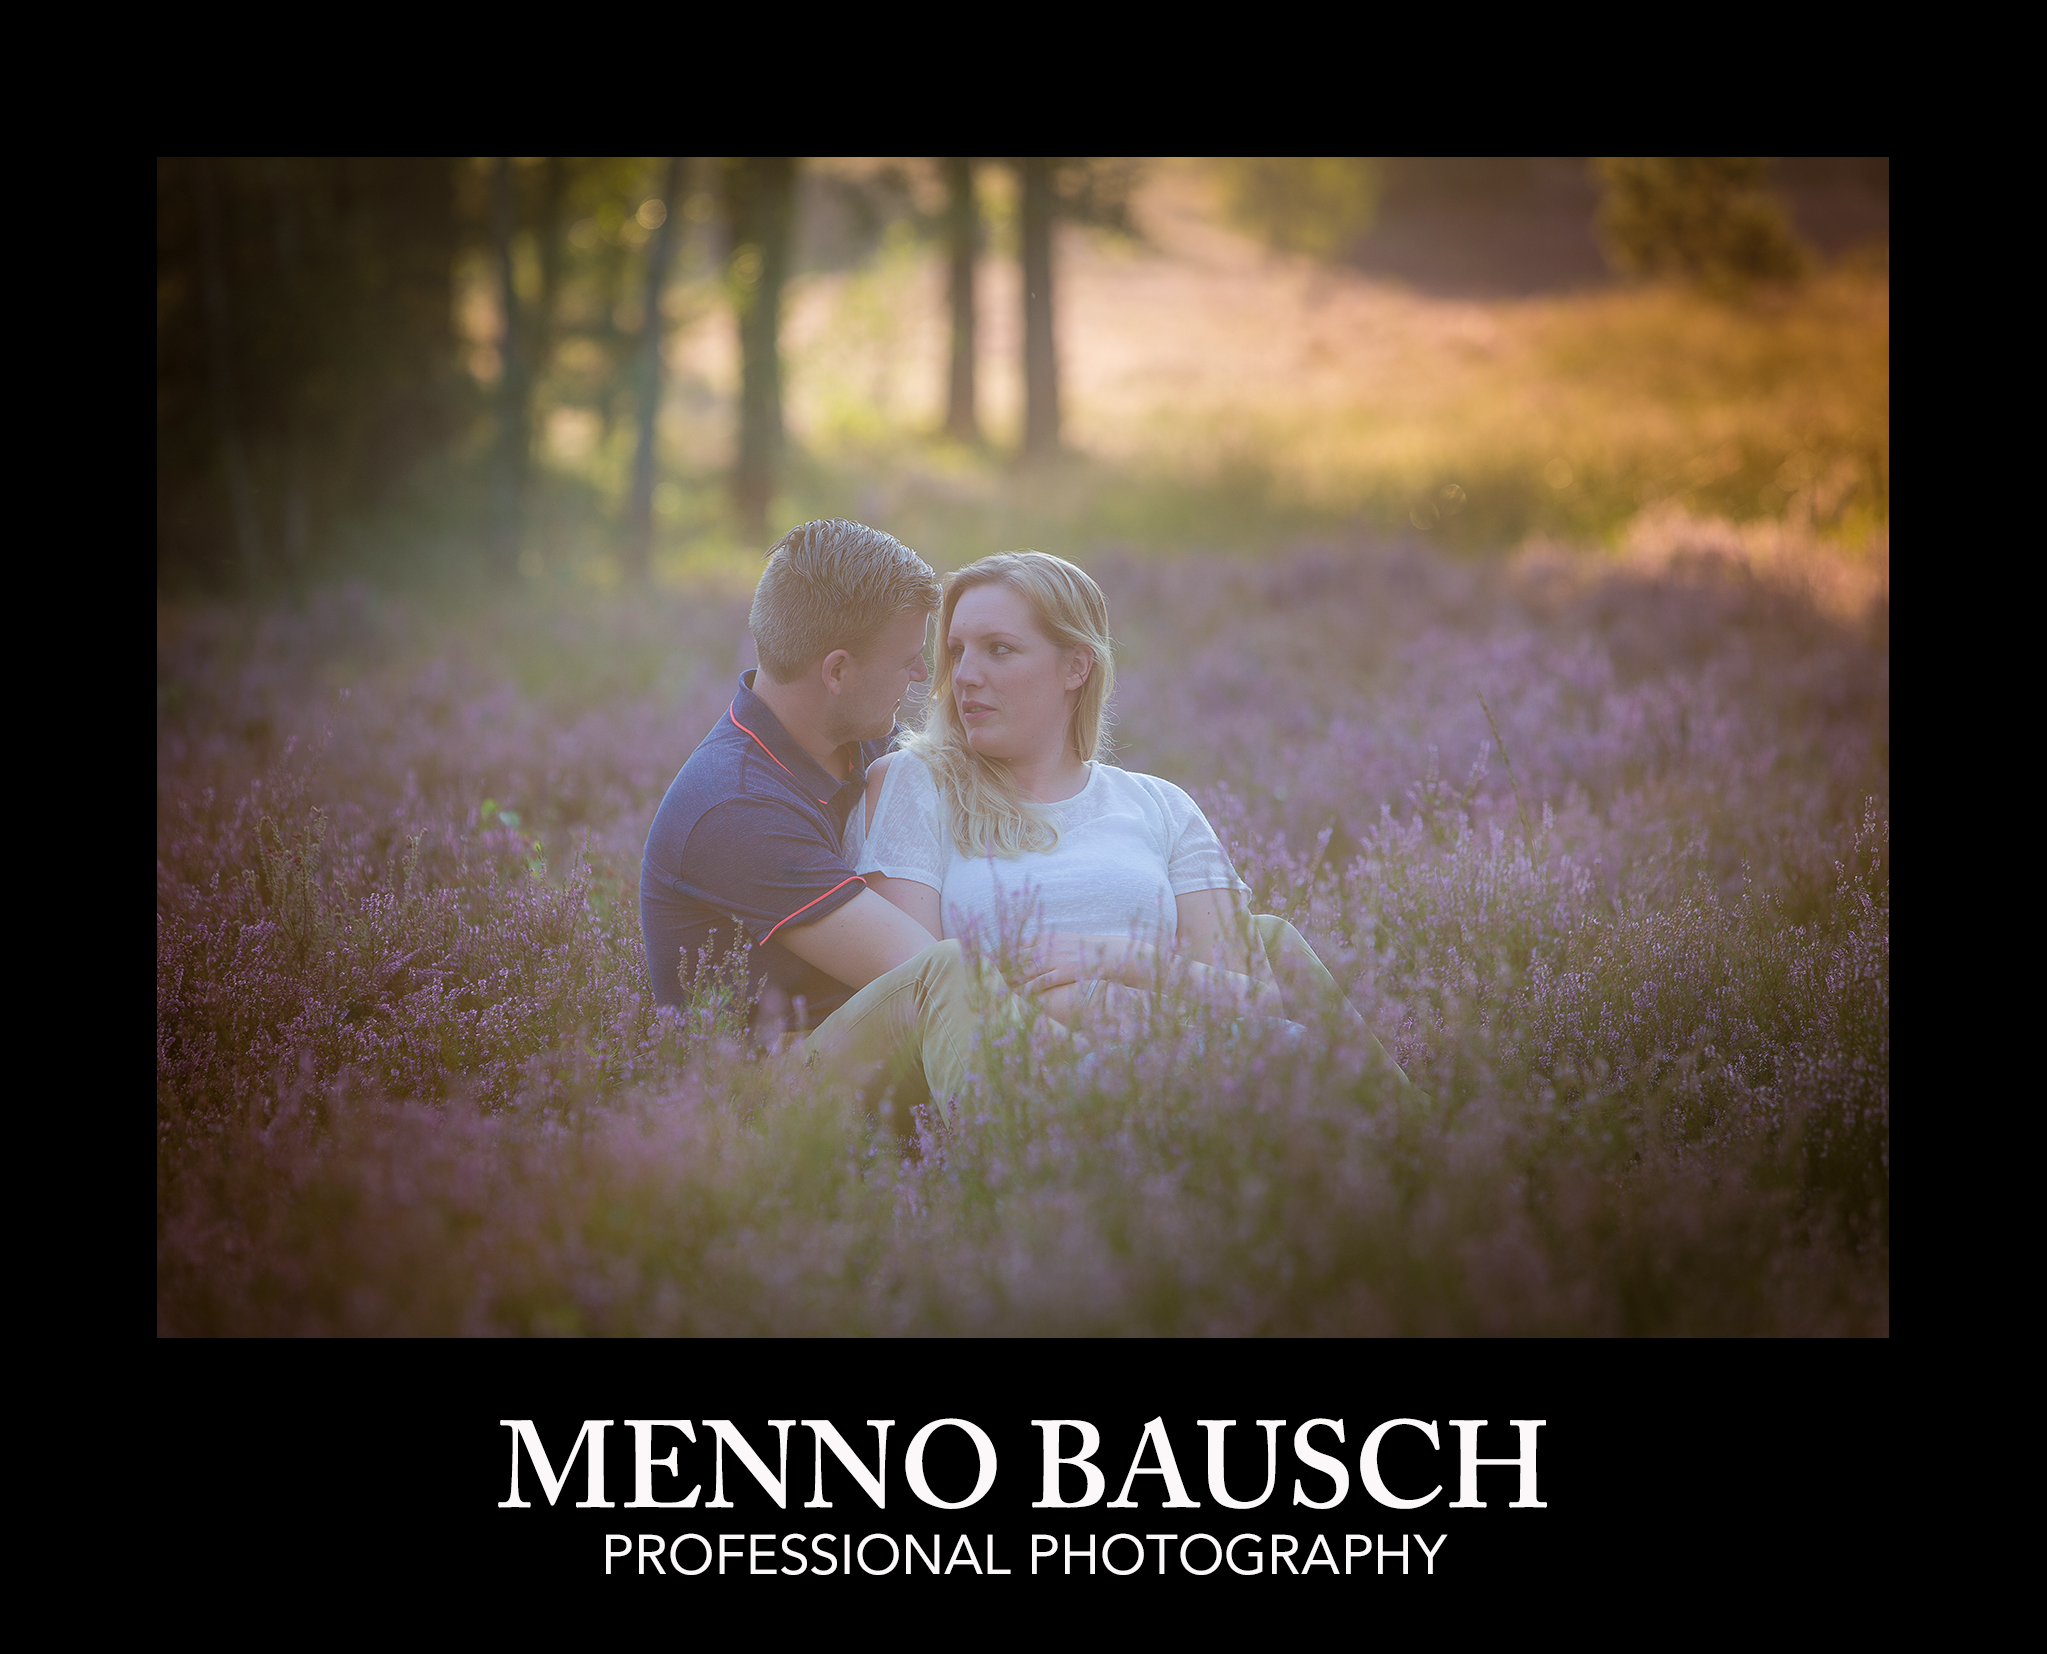 Copyright Menno Bausch Fotografie